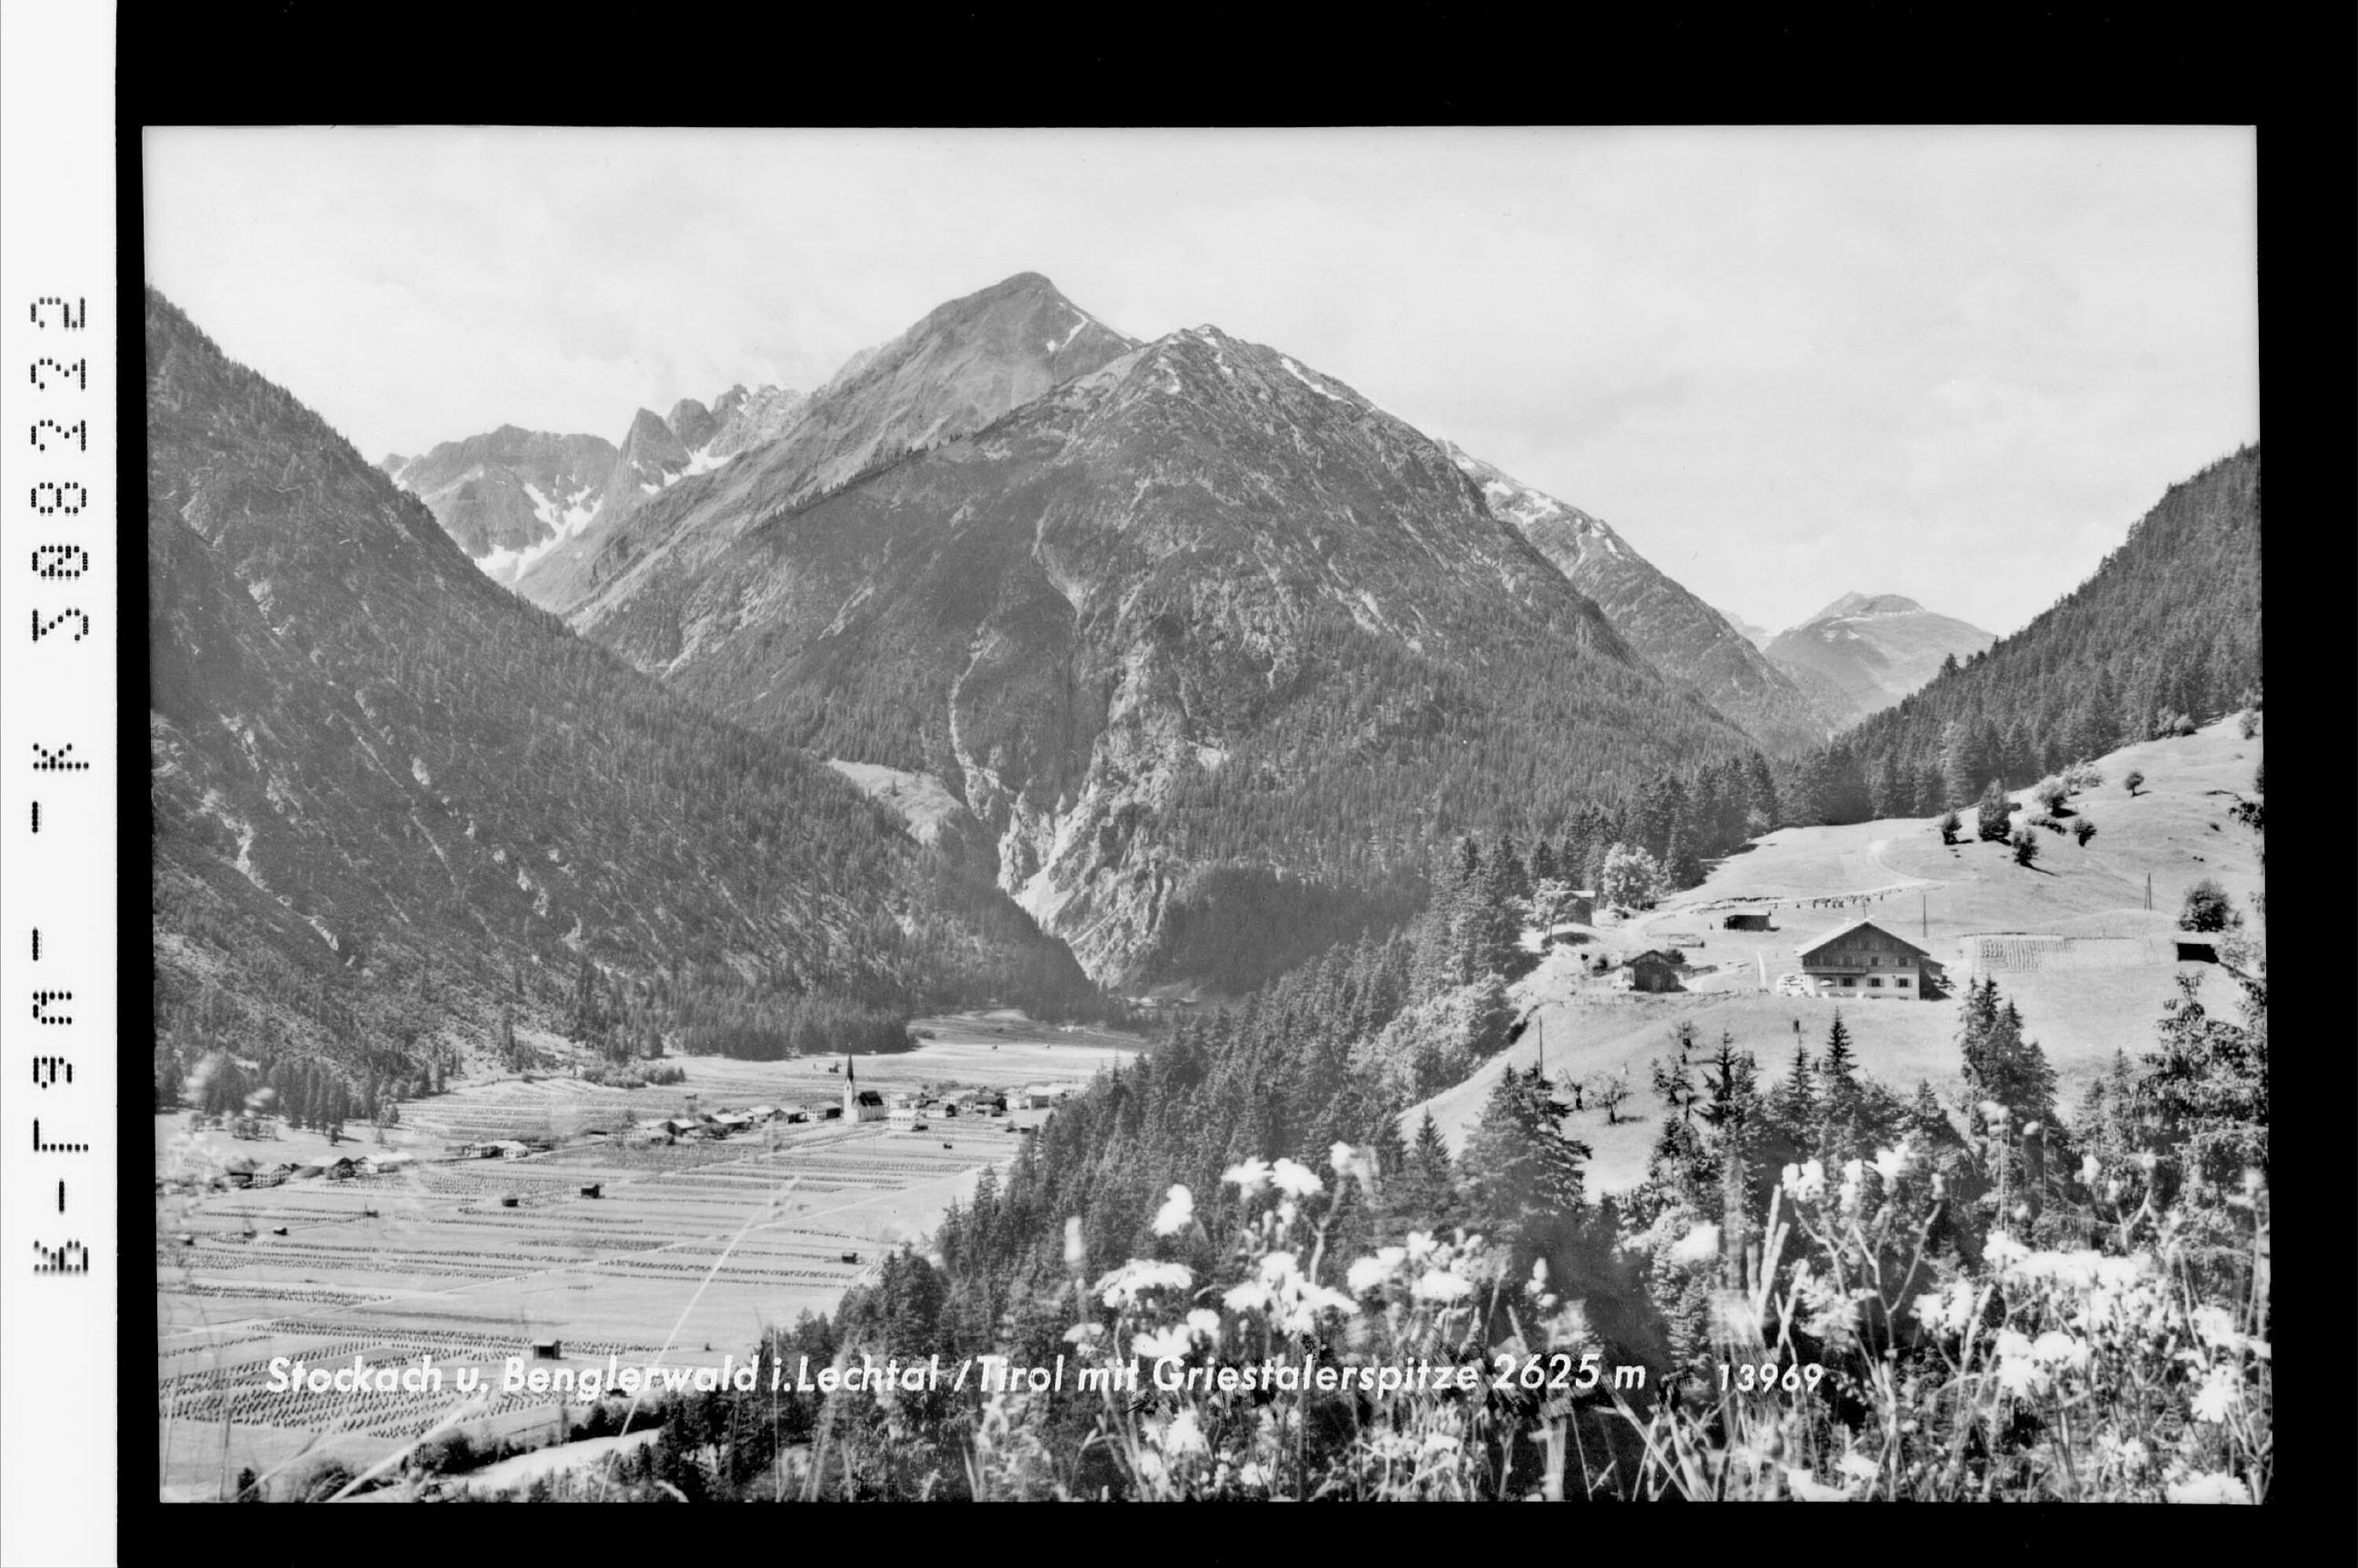 Stockach und Benglerwald im Lechtal / mit Griestalerspitze 2625 m></div>


    <hr>
    <div class=